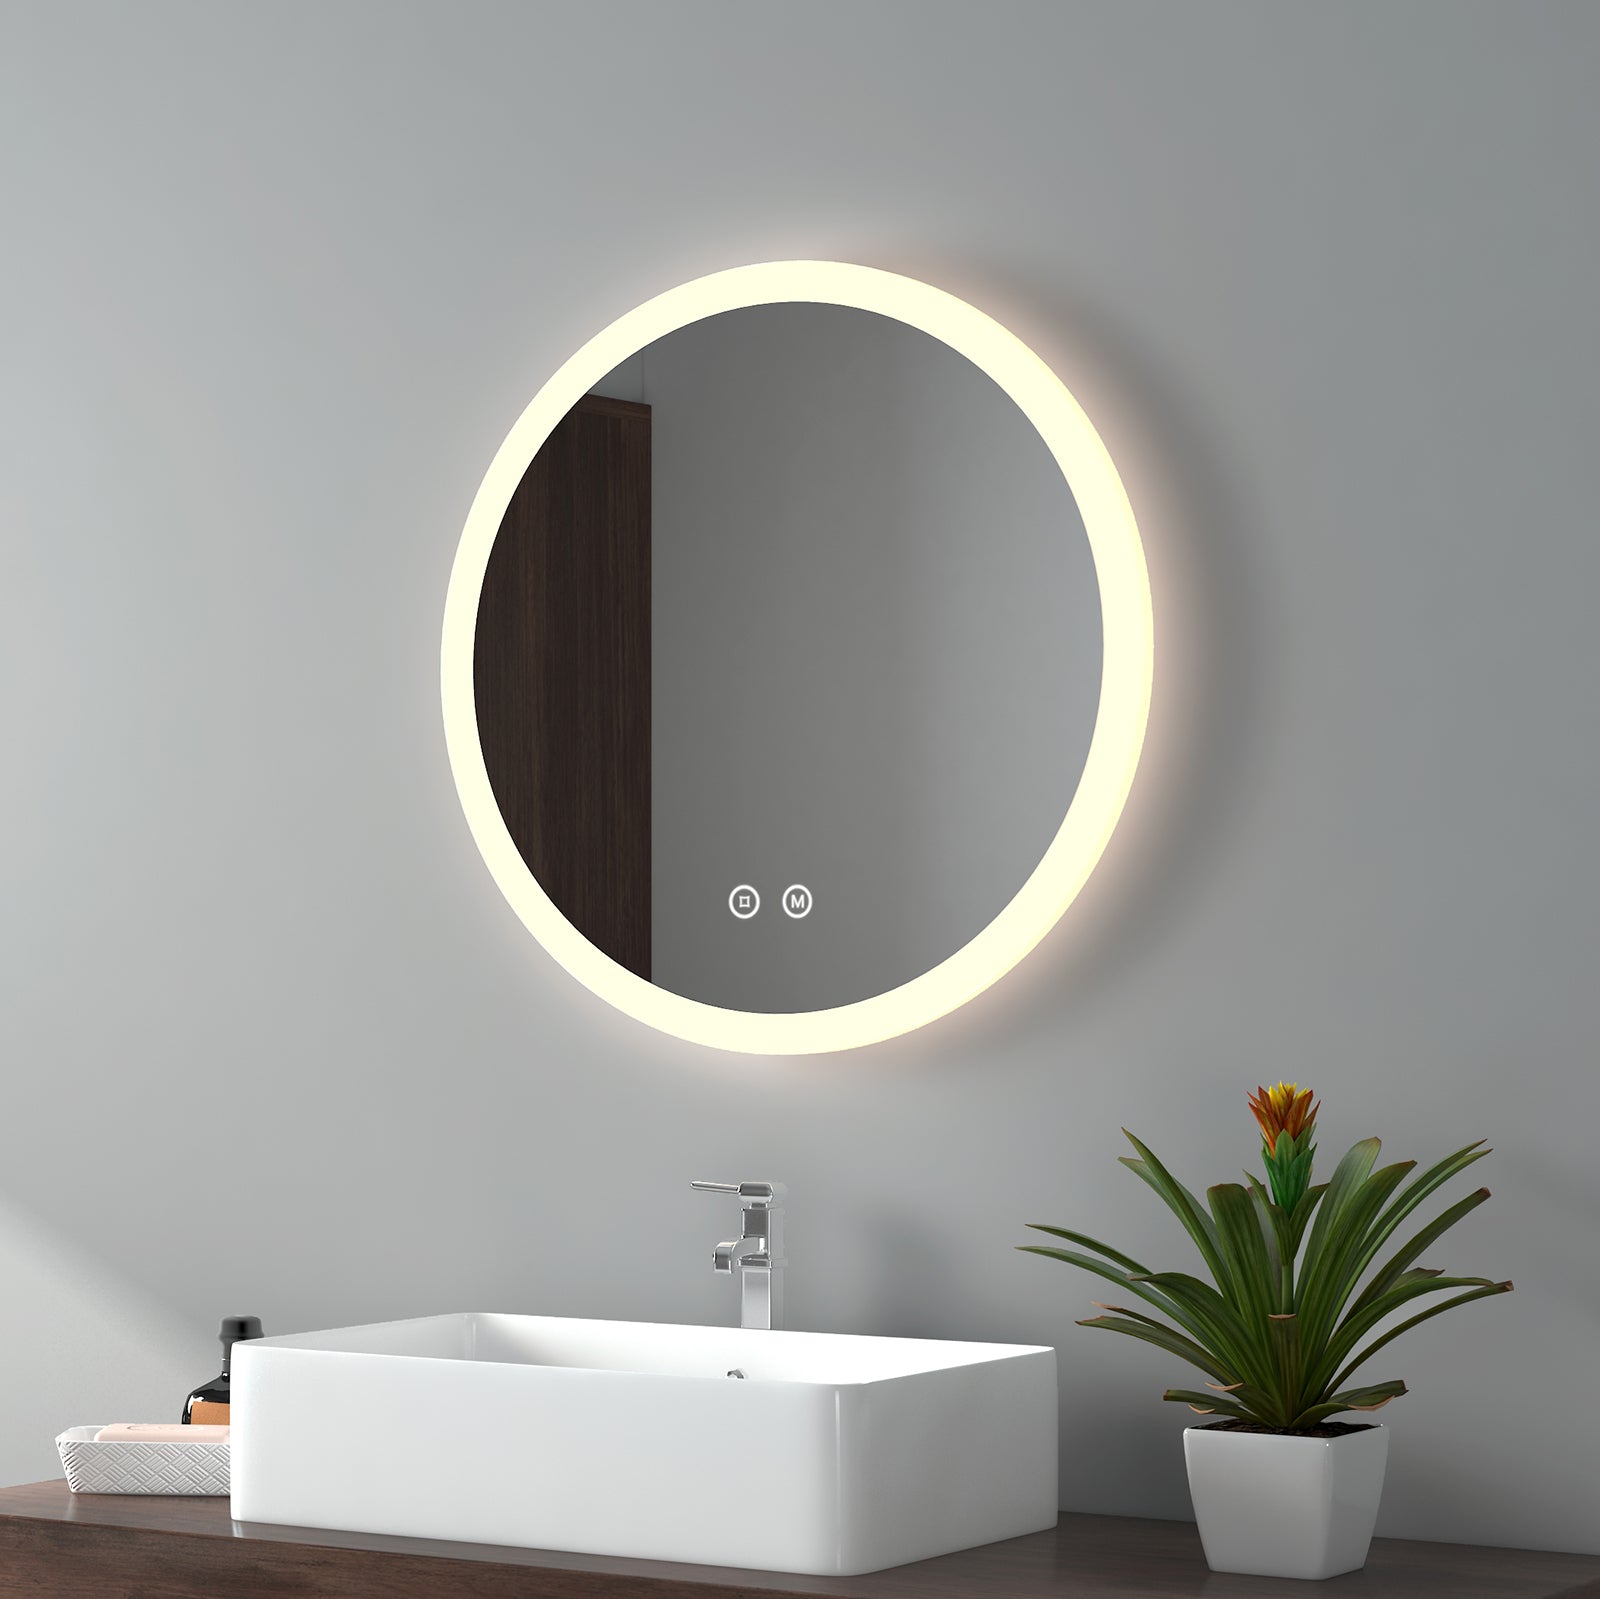 EMKE Wandspiegel Badezimmer Rund „LeeMi γ Pro“ mit 3 Lichtfarben, Dimmung, Touch-Schalter, Antibeschlag, 60x60cm